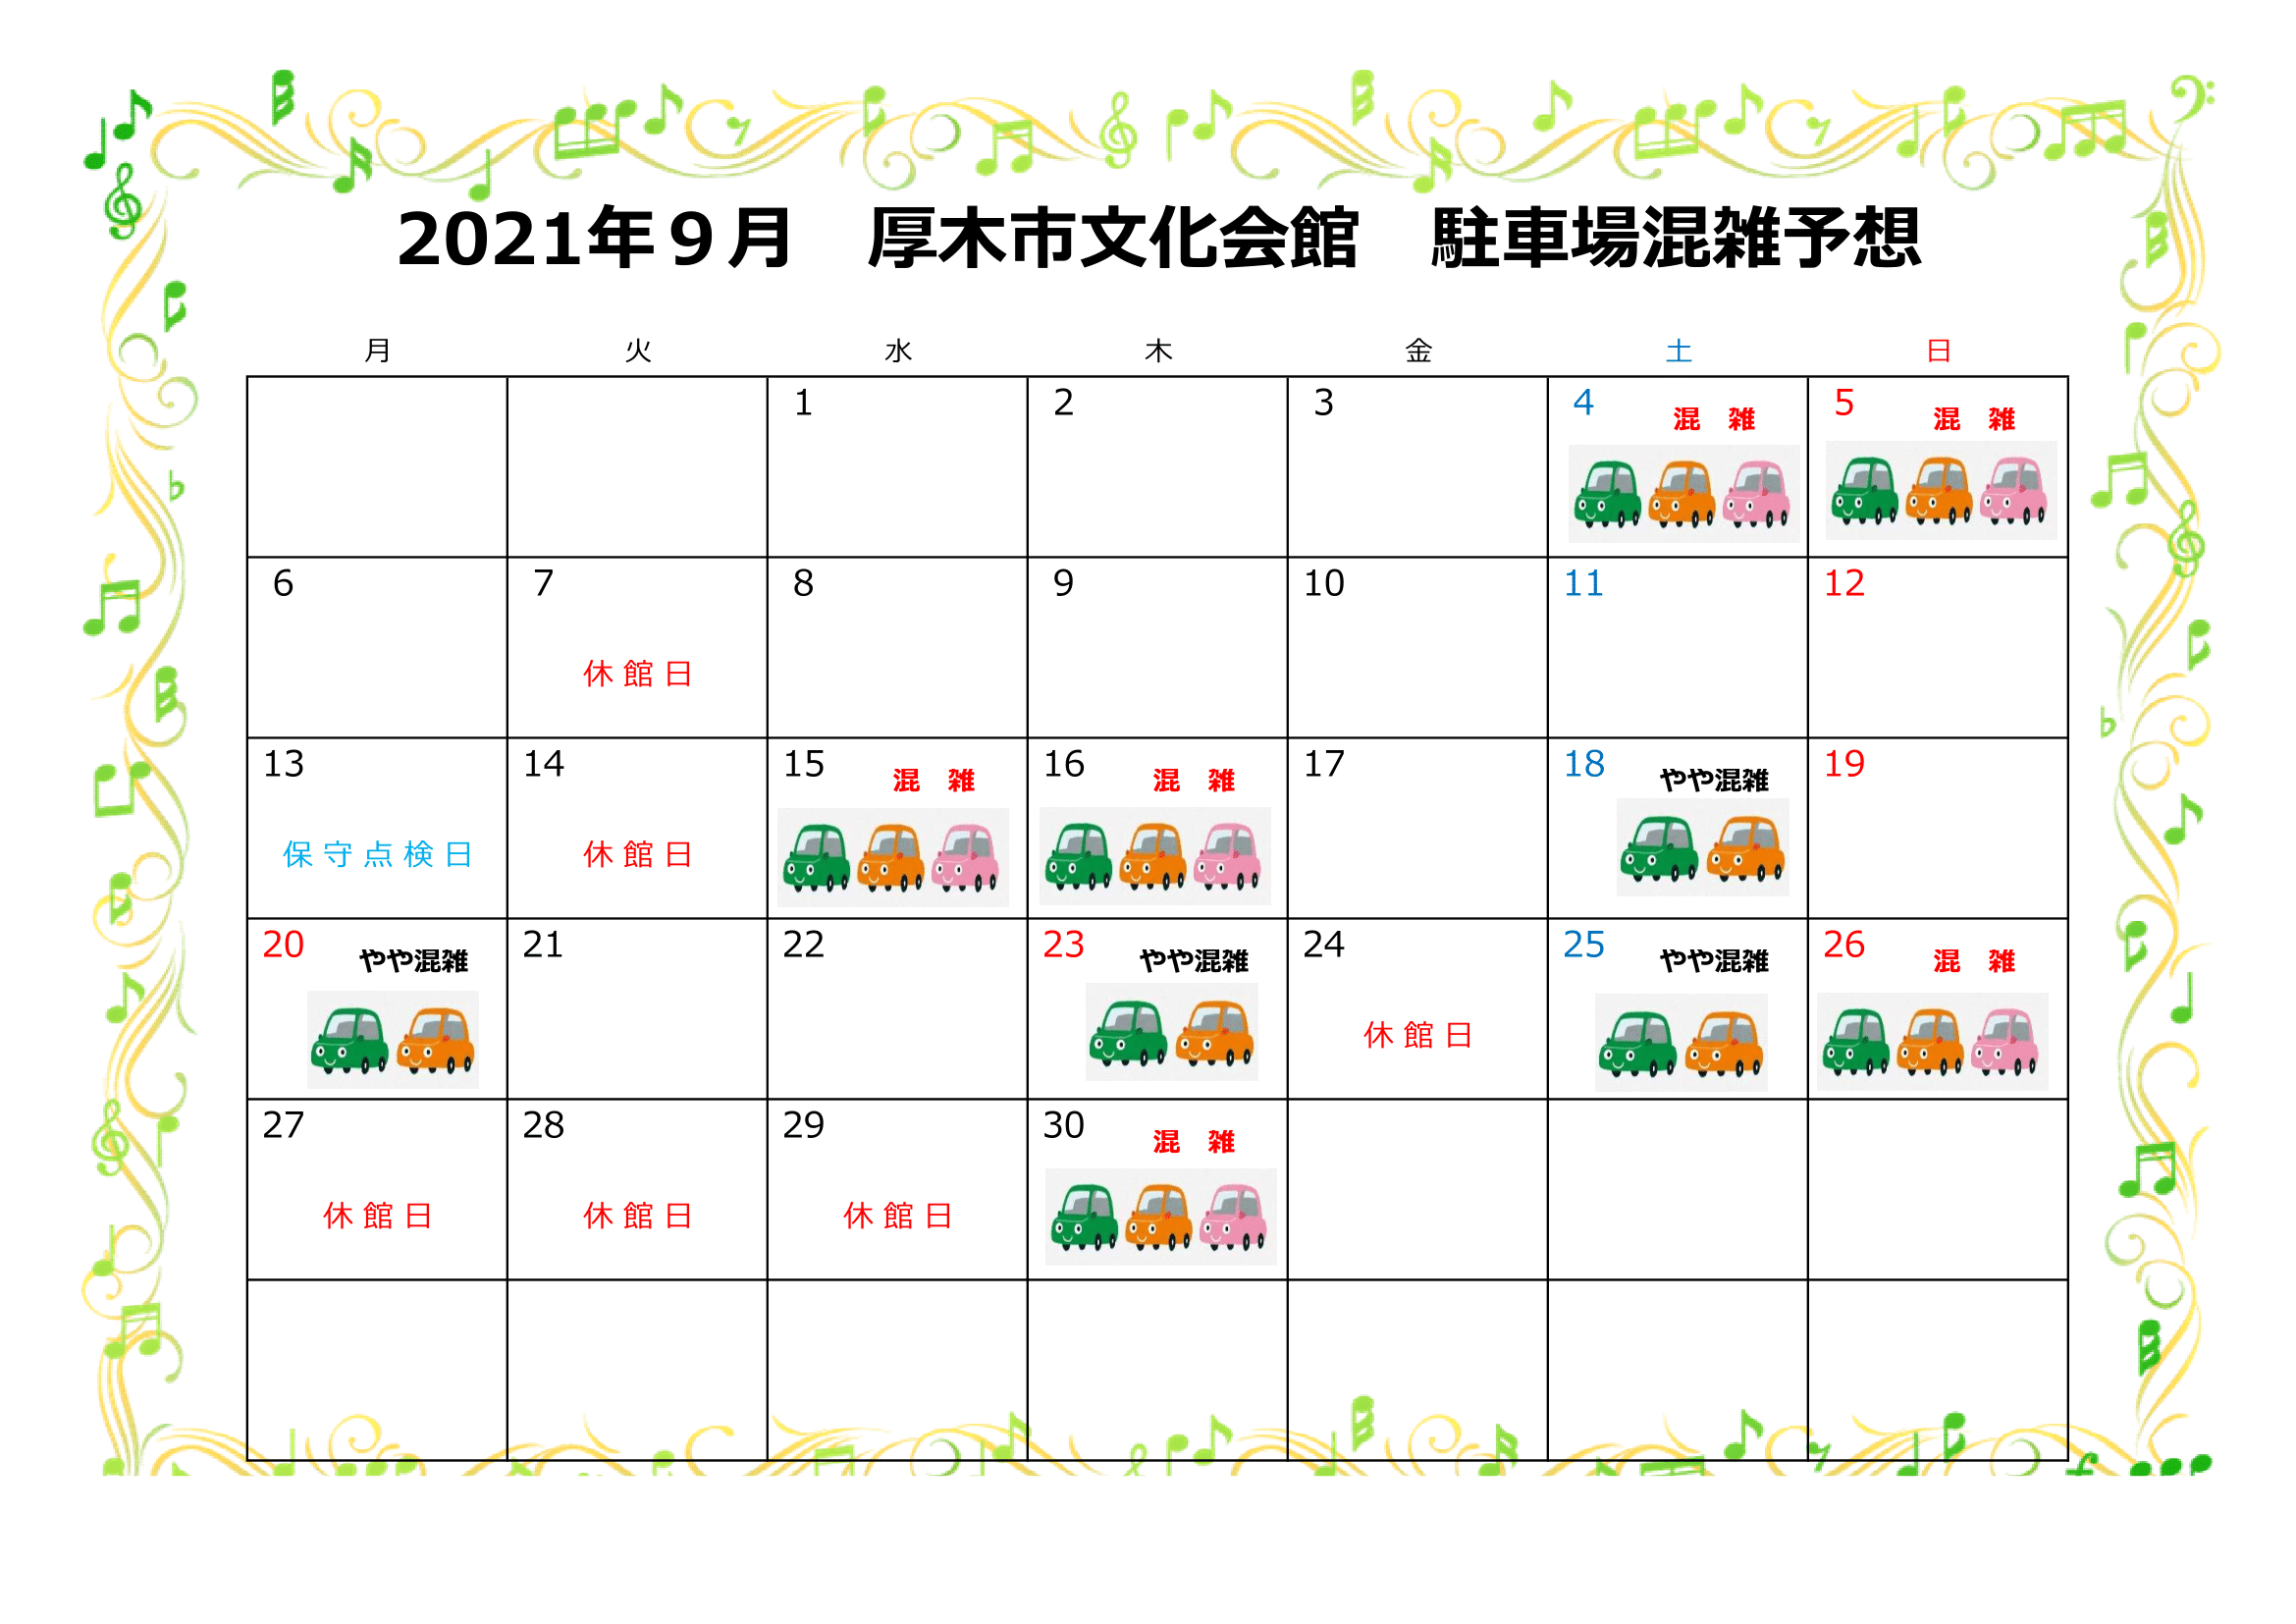 https://atsugi-bunka.jp/topics/img/2021.8-1-1.png